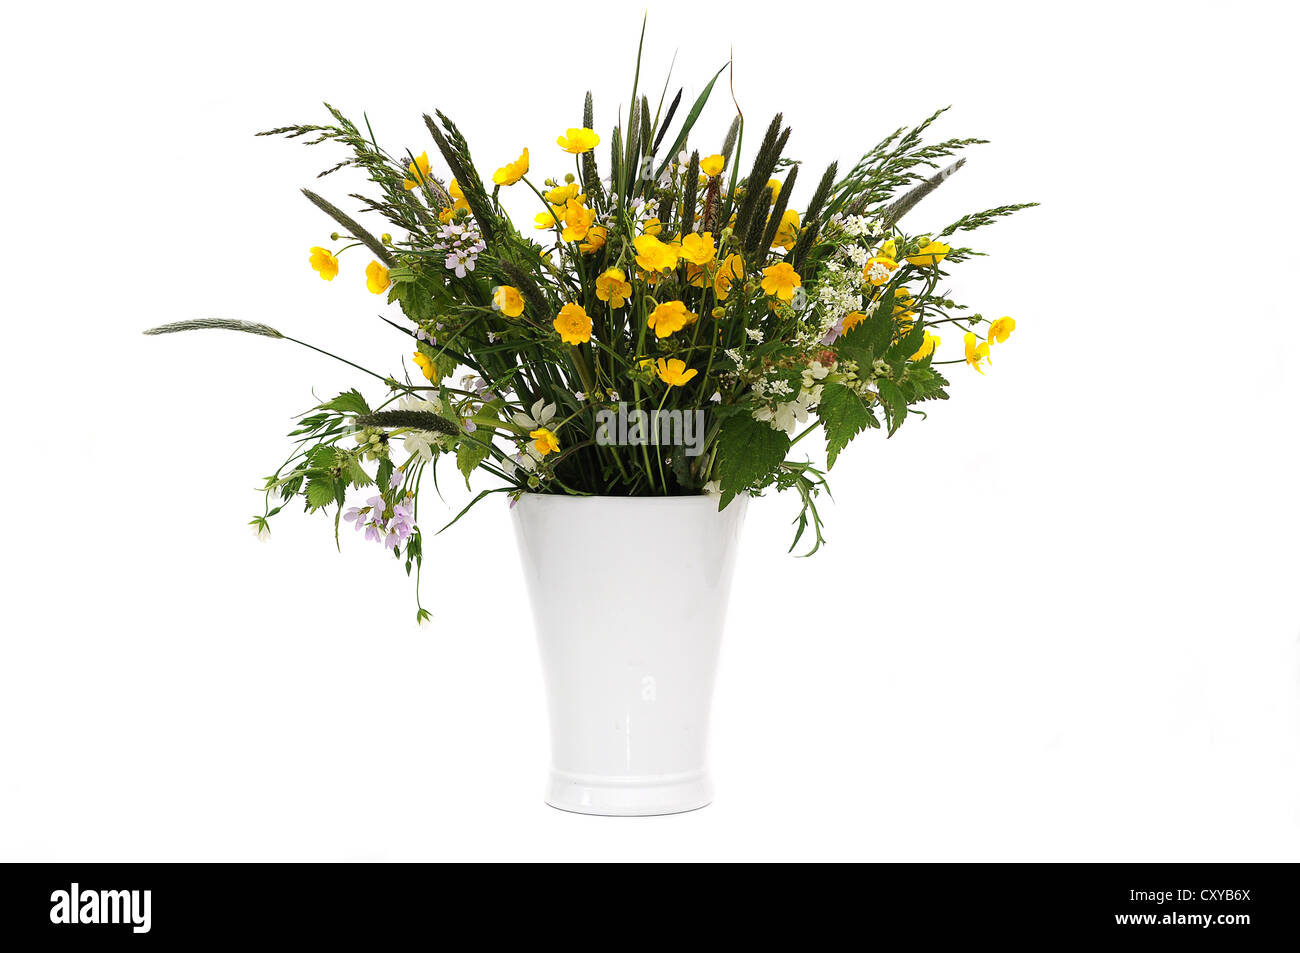 Bouquet de fleurs des champs avec des renoncules (Ranunculus acris) dans un vase blanc Banque D'Images